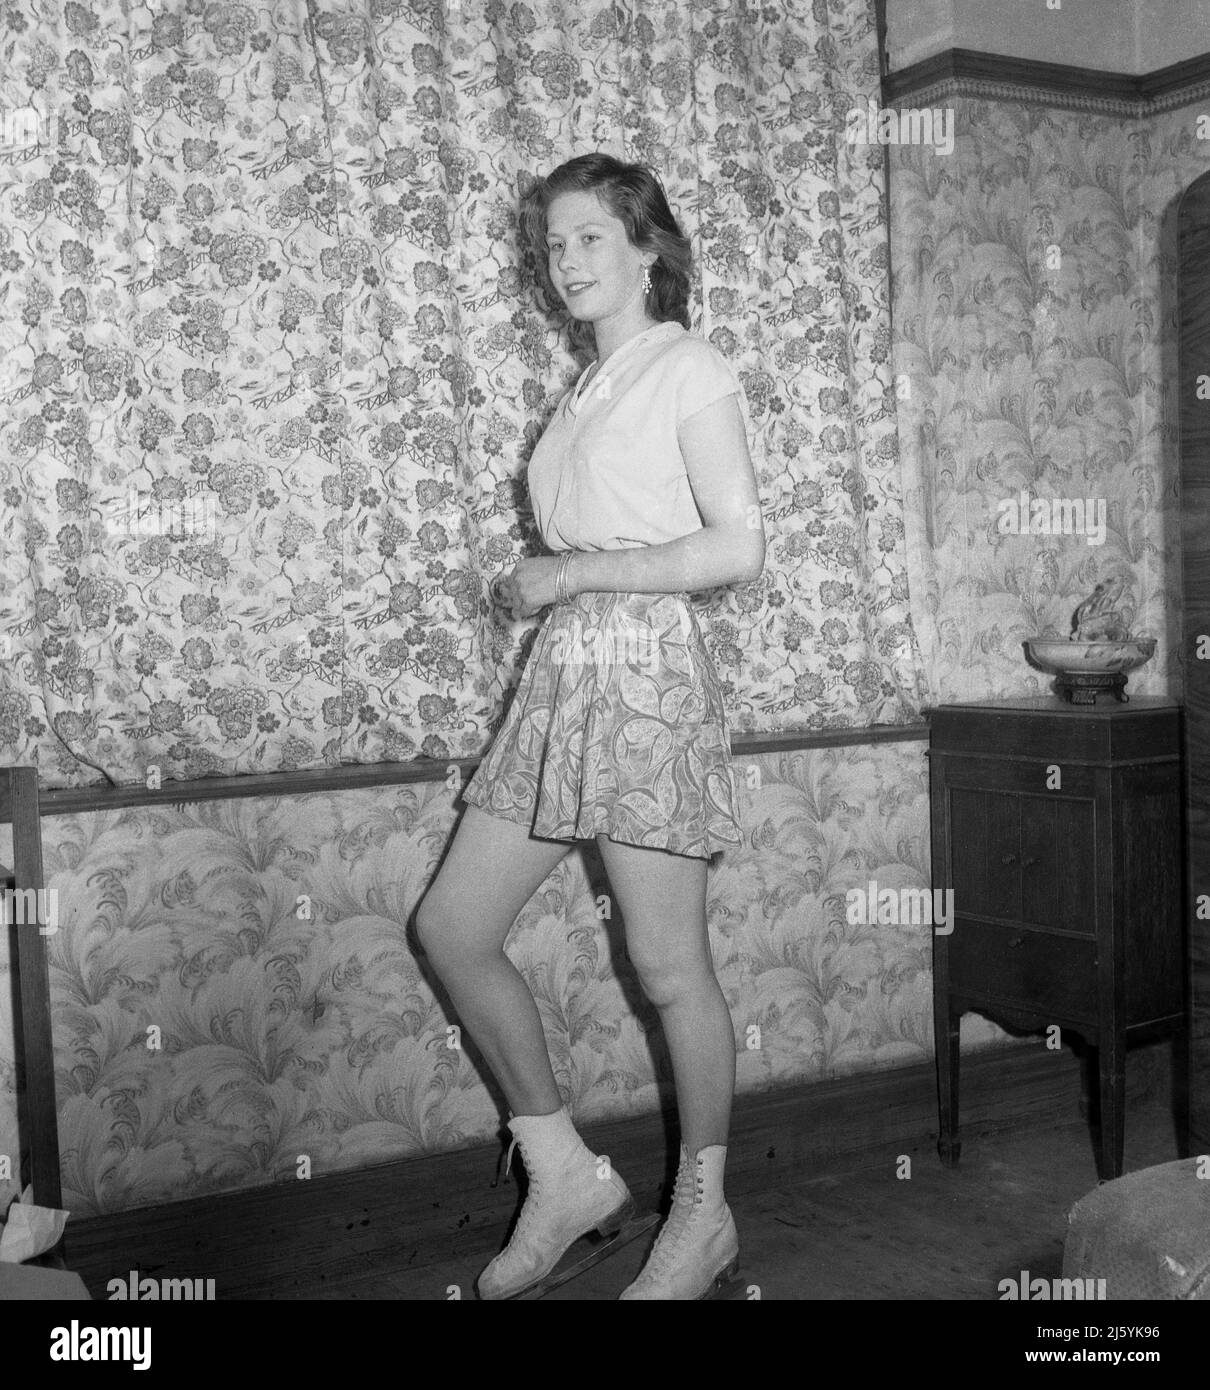 1961, historique, une jeune femme patineuse debout dans une salle de devant pour sa photo dans son sommet de patinage et jupe et patins à glace, Stockport, Angleterre, Royaume-Uni. Sa jupe à motif fleuri est assortie aux rideaux ! Banque D'Images